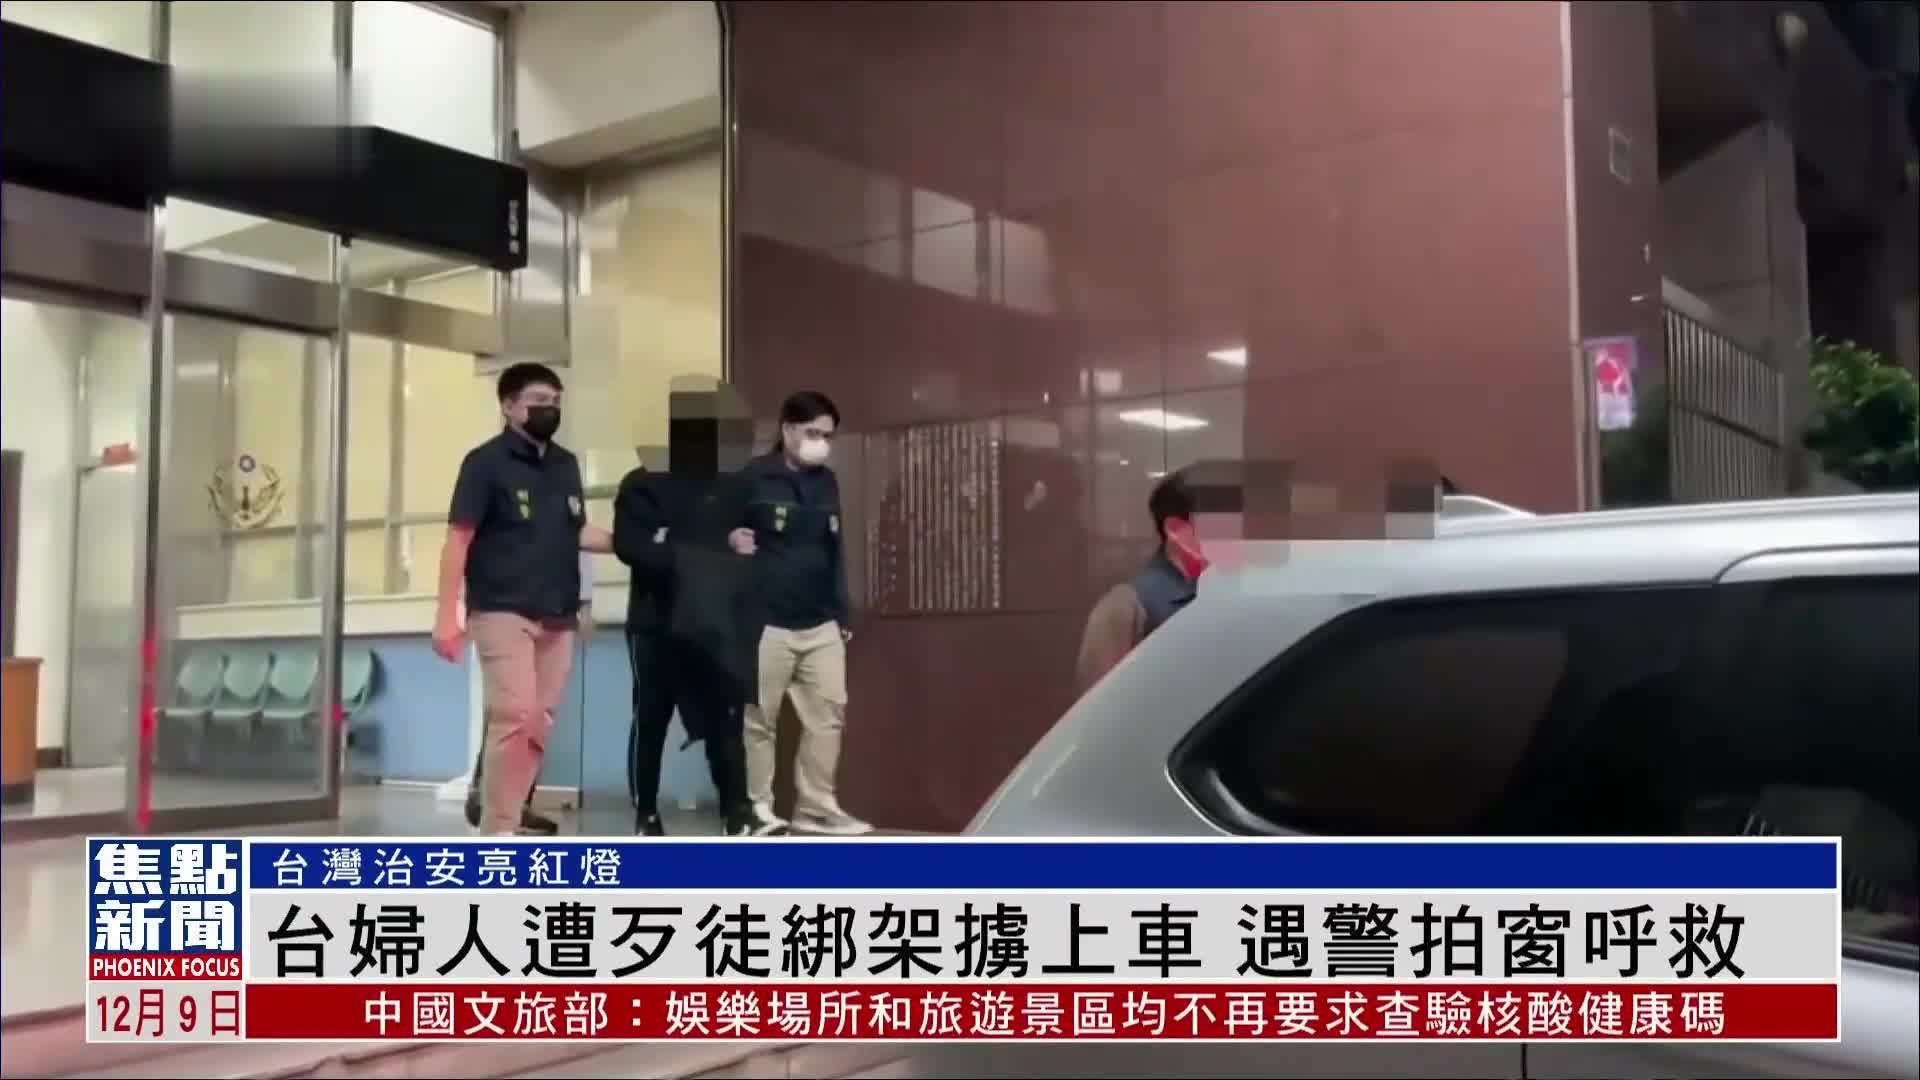 台湾一妇人遭歹徒绑架被掳上车 偶遇警察后拍窗呼救